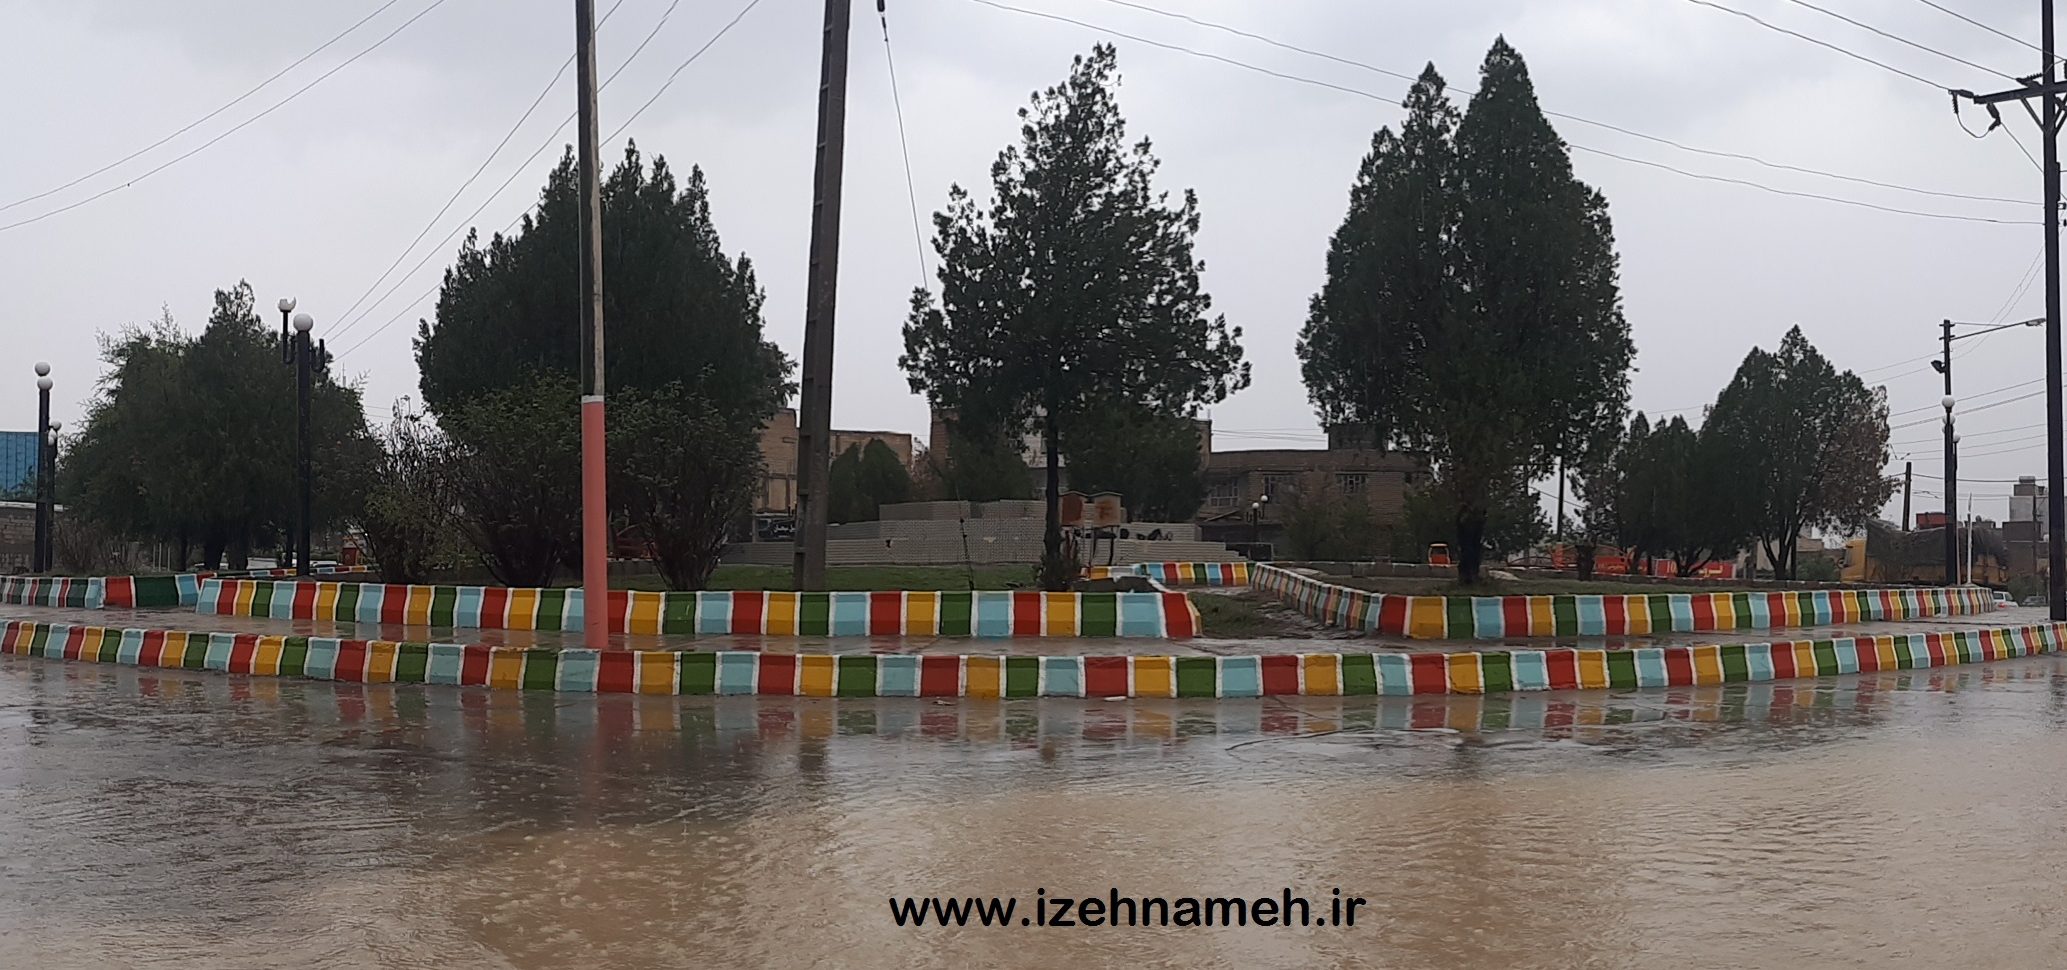 ثبت عدد قابل توجه بارش روز گذشته در روستای سراک ایذه